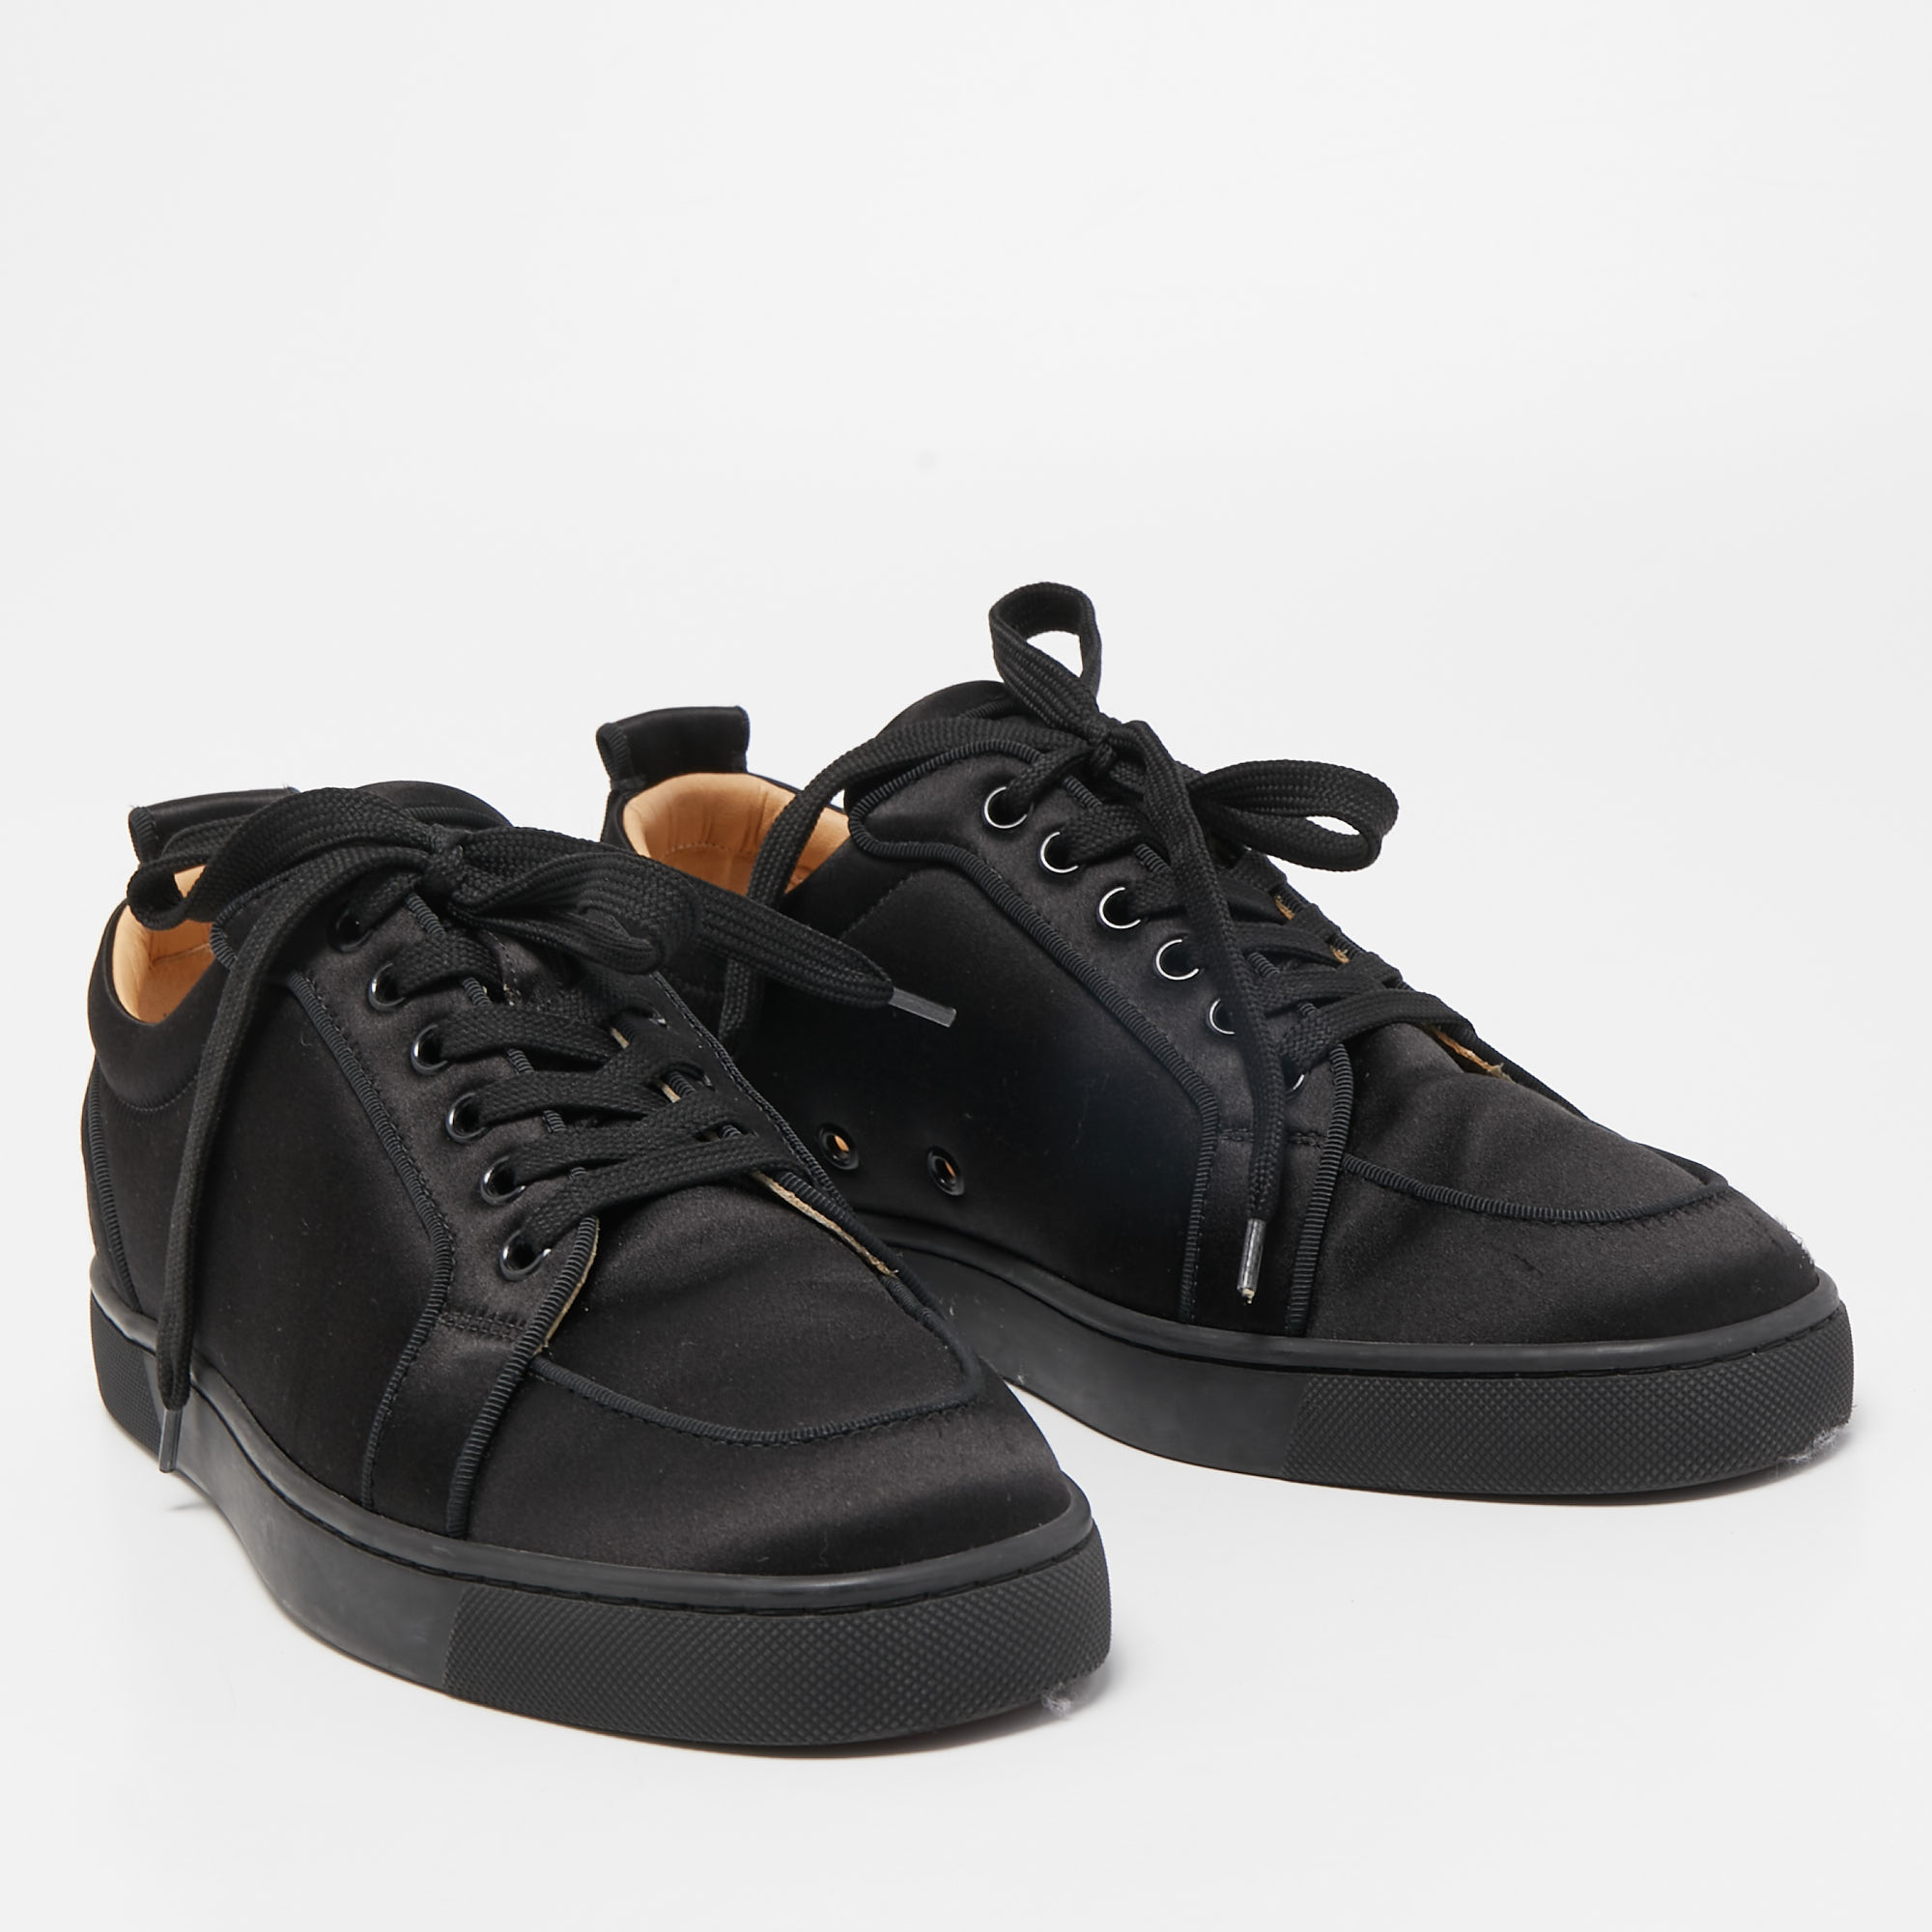 Christian Louboutin Black Satin Vieira Low Top Sneakers Size 40